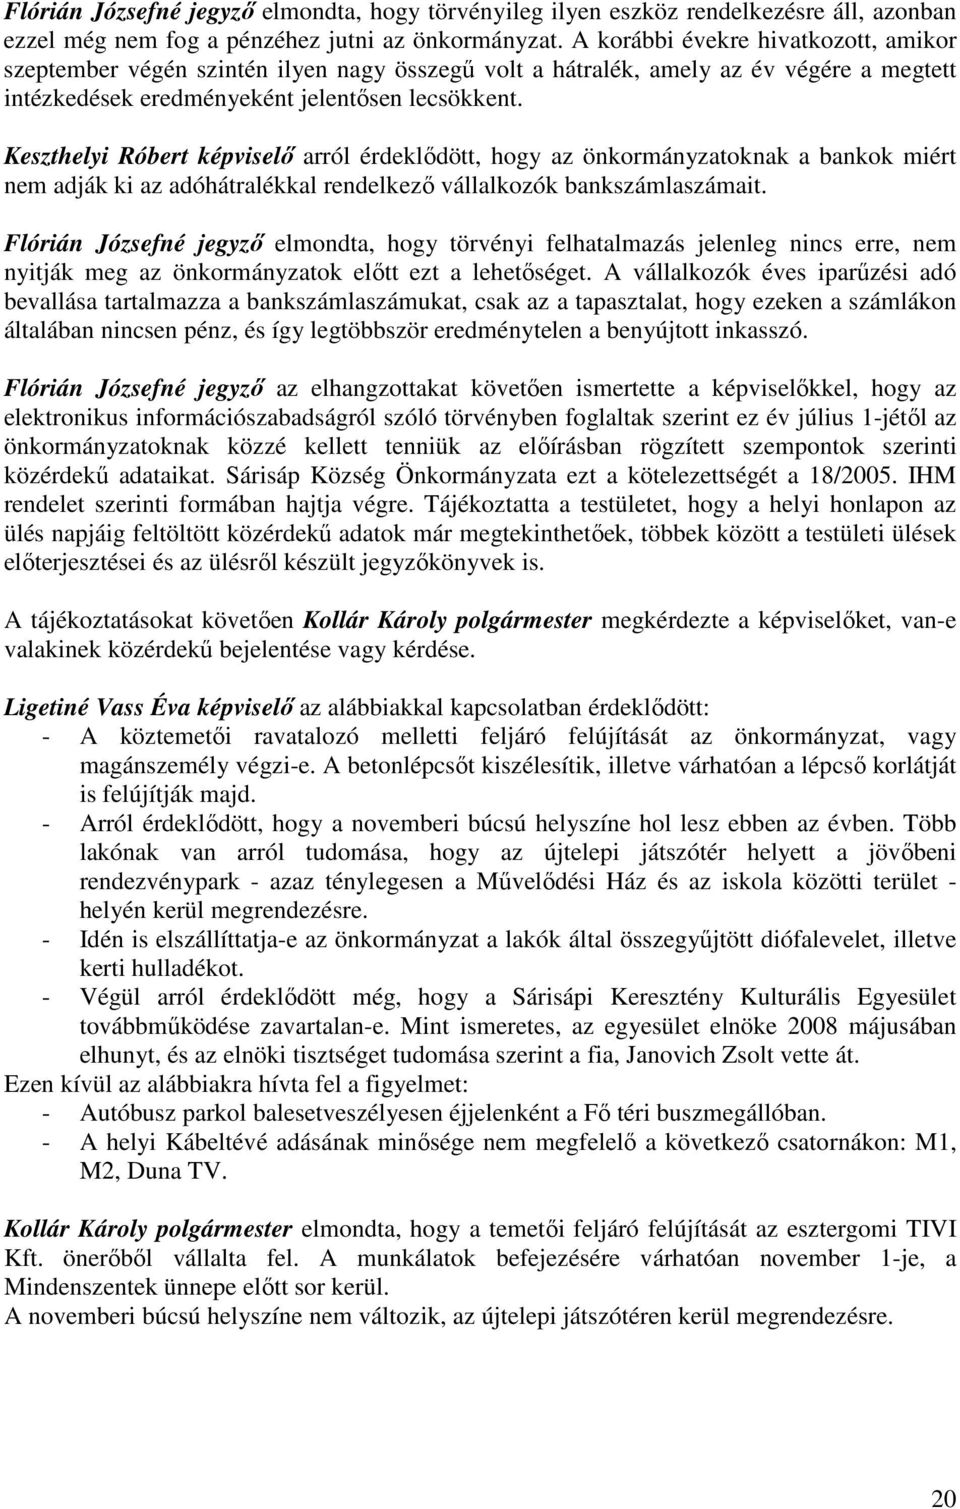 Keszthelyi Róbert képviselı arról érdeklıdött, hogy az önkormányzatoknak a bankok miért nem adják ki az adóhátralékkal rendelkezı vállalkozók bankszámlaszámait.